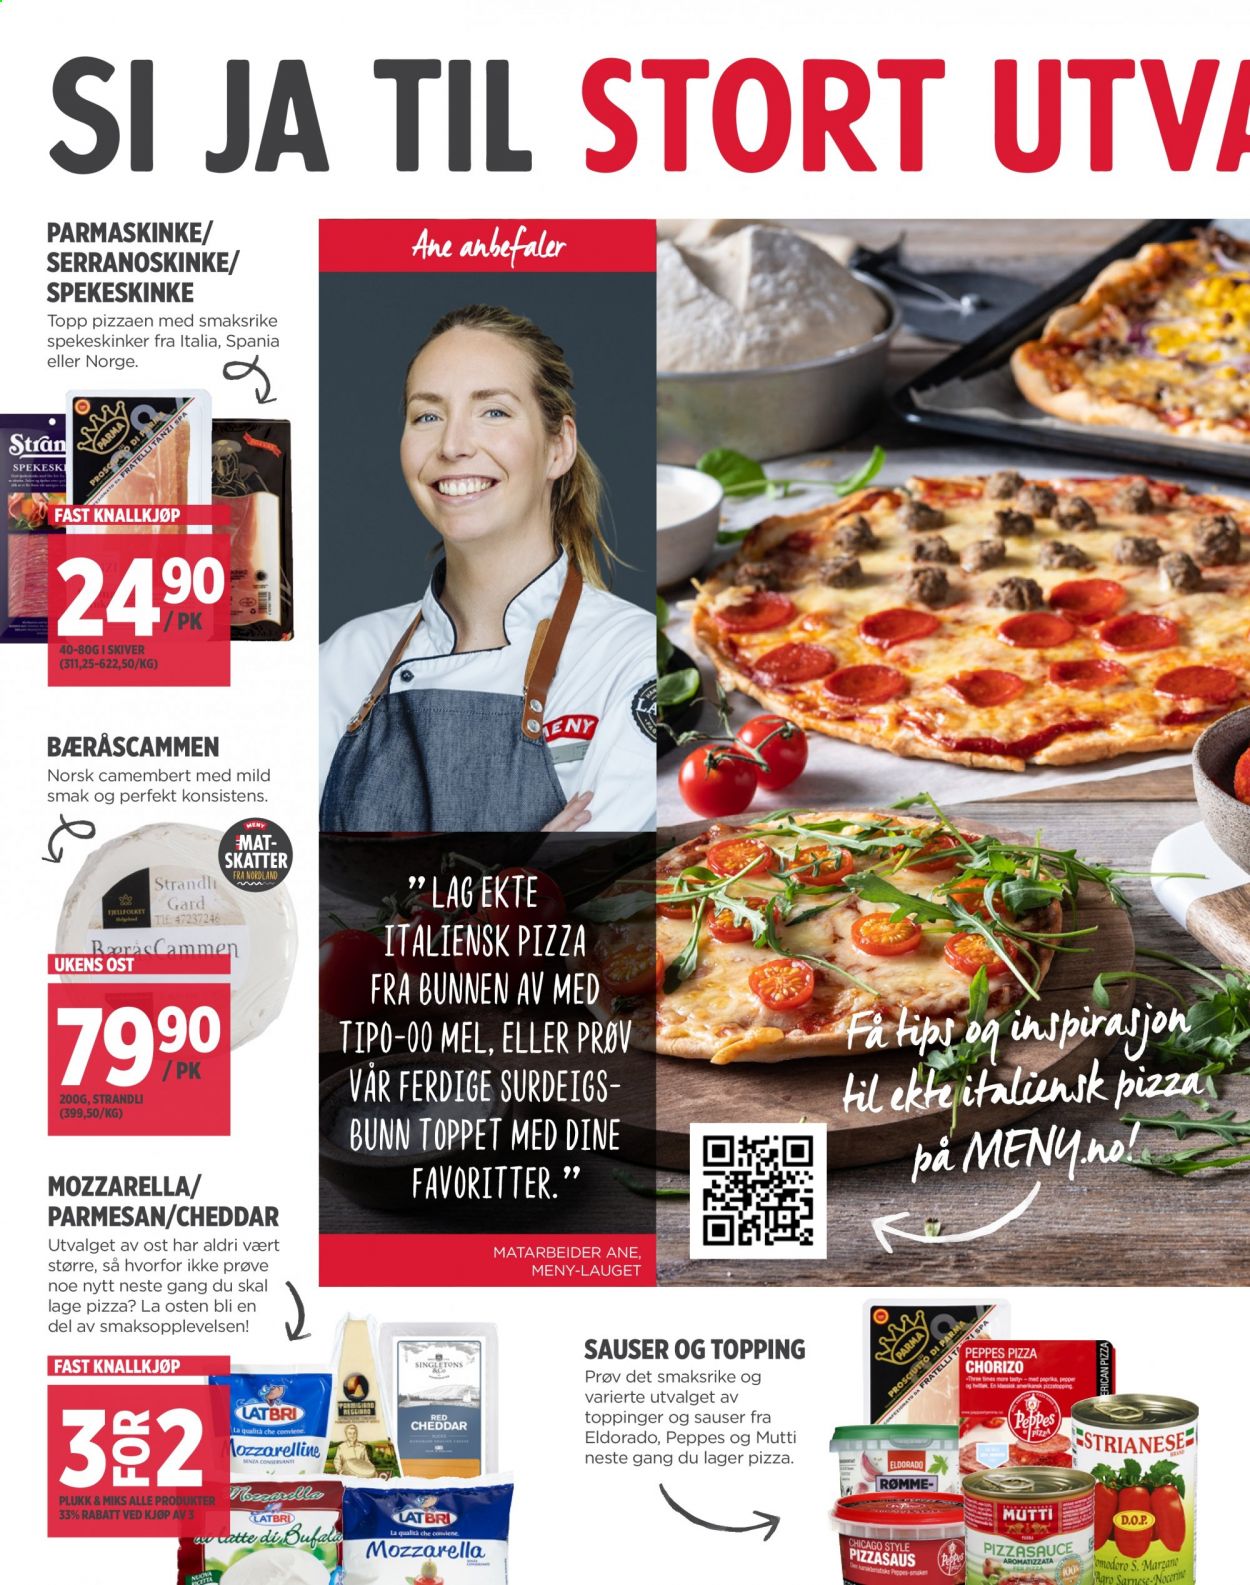 thumbnail - Kundeavis MENY - 5.4.2021 - 10.4.2021 - Produkter fra tilbudsaviser - pizza, Jamón Serrano, parmaskinke, spekeskinke, camembert, Cheddar, ost, parmesan, Peppes Pizza, mel. Side 4.